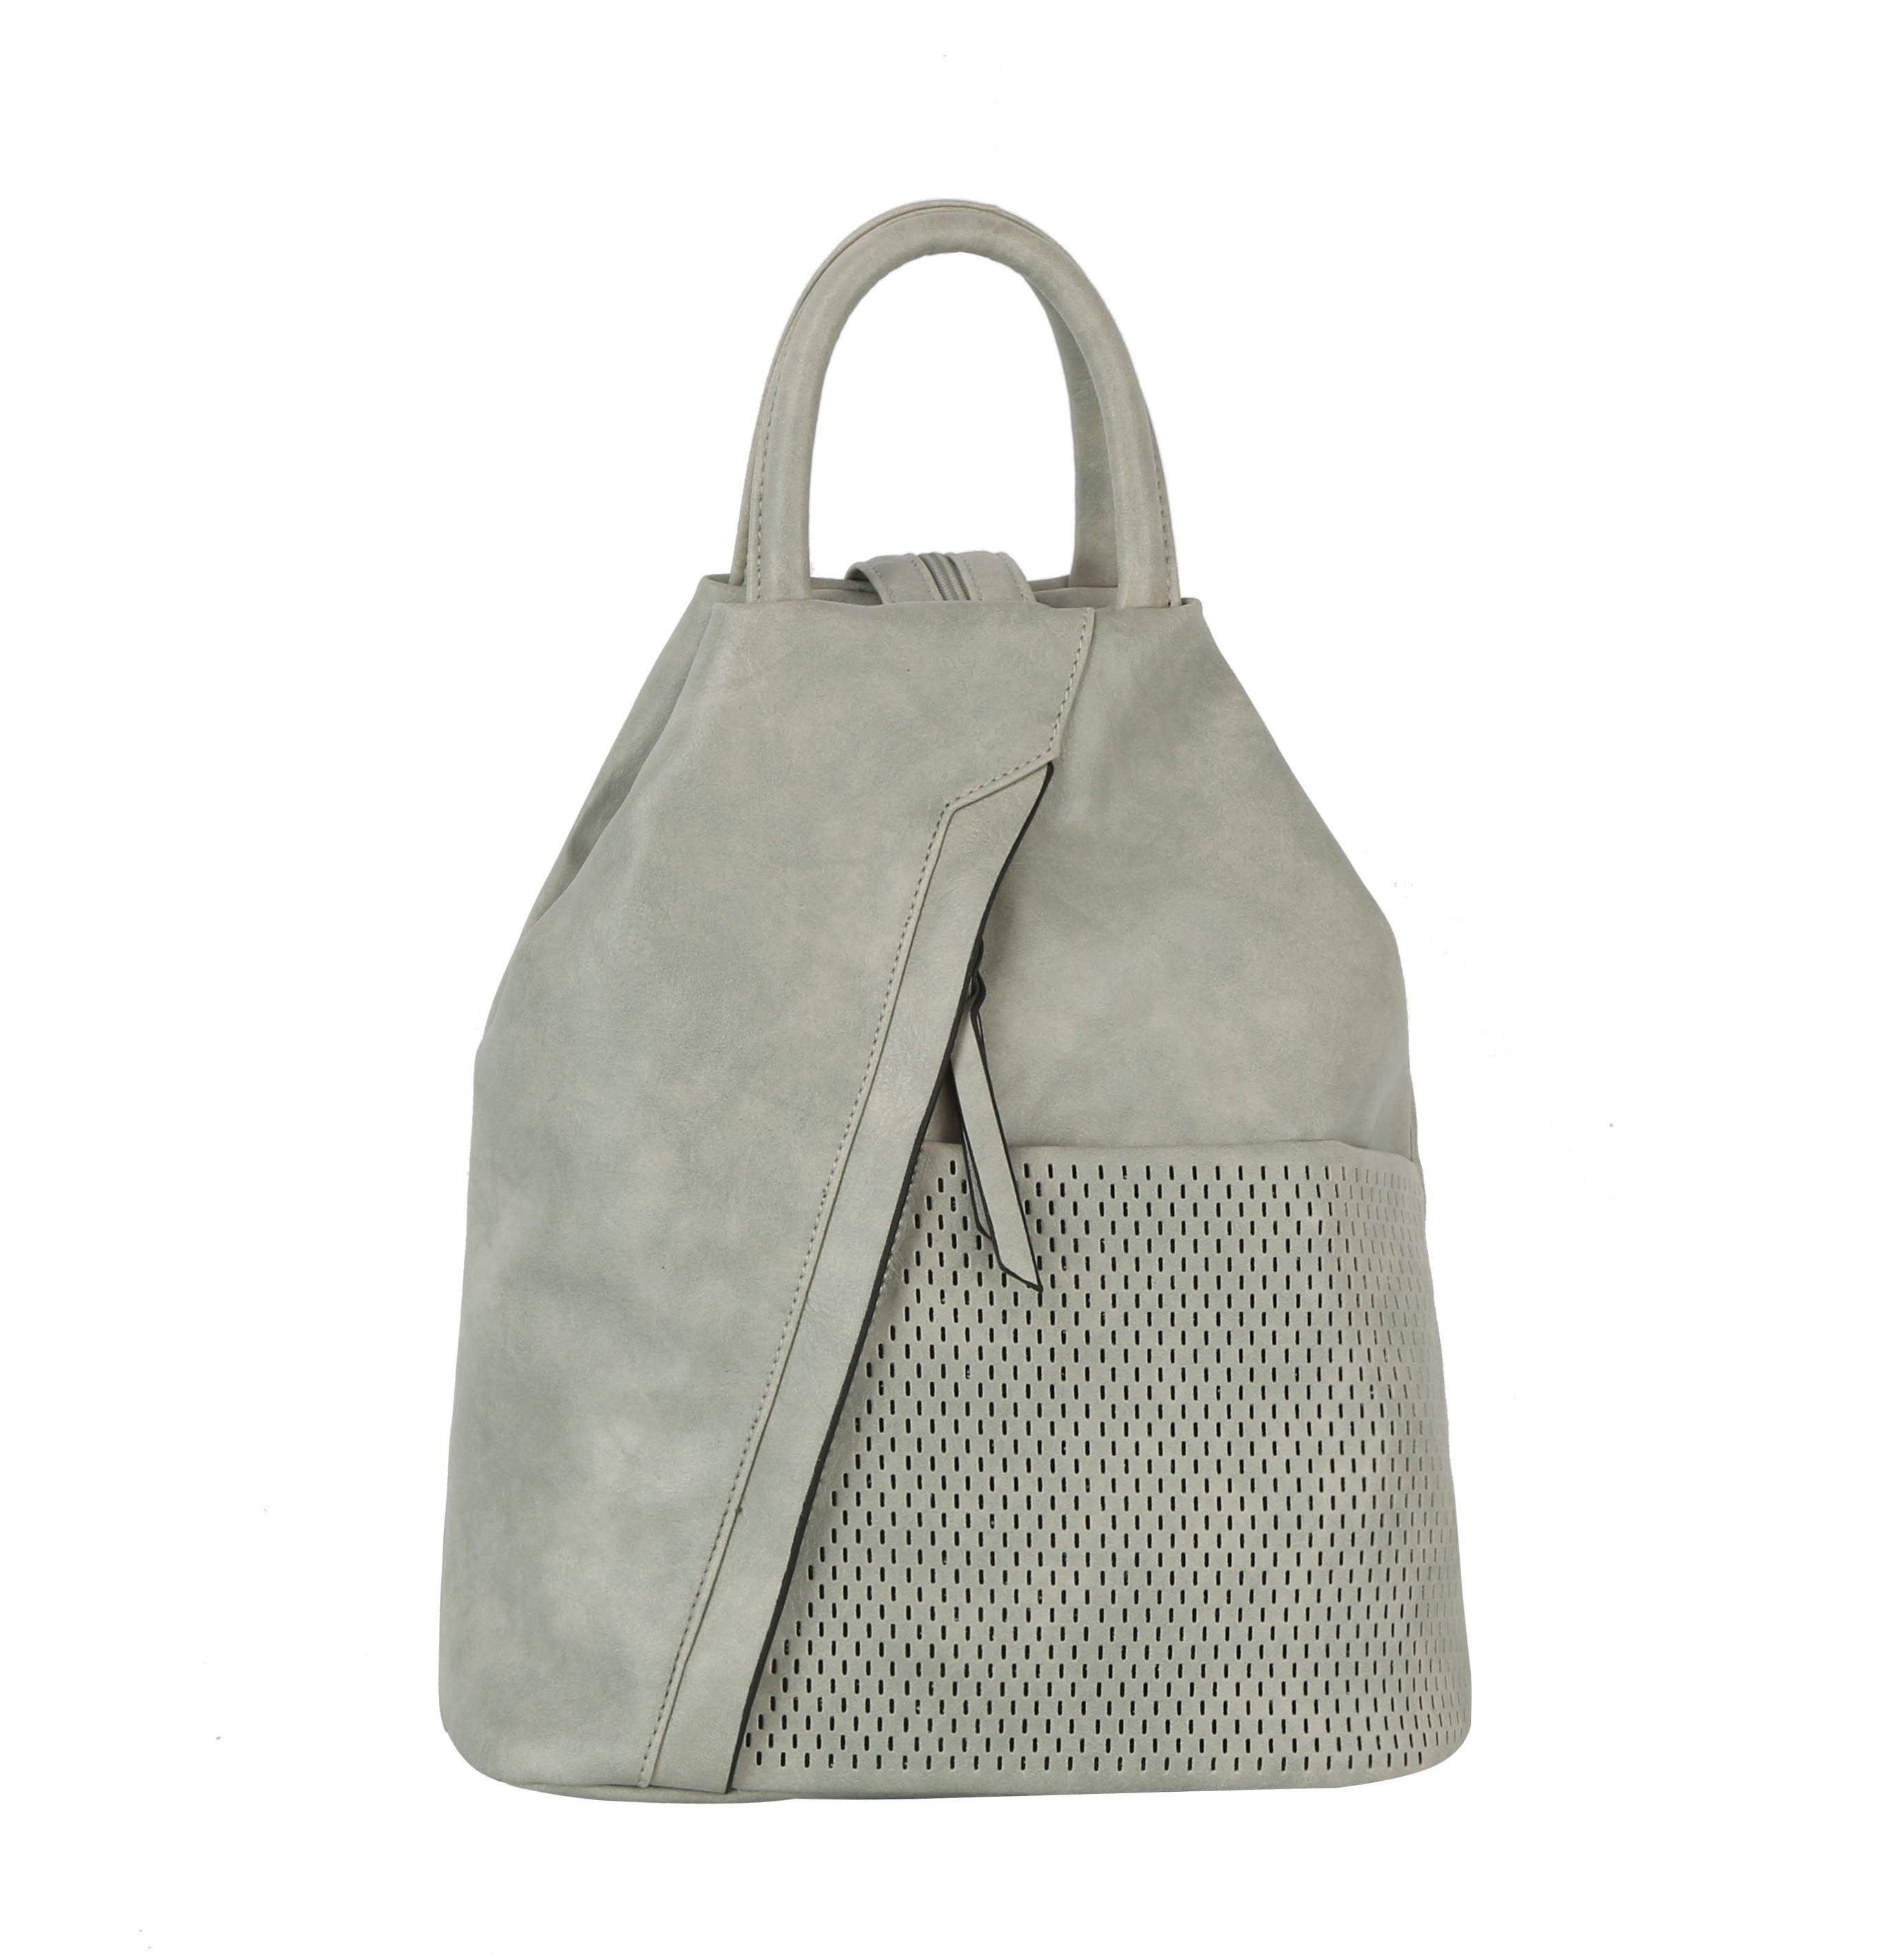 Handbag Factory Corp - 2 way convertible strap backpack